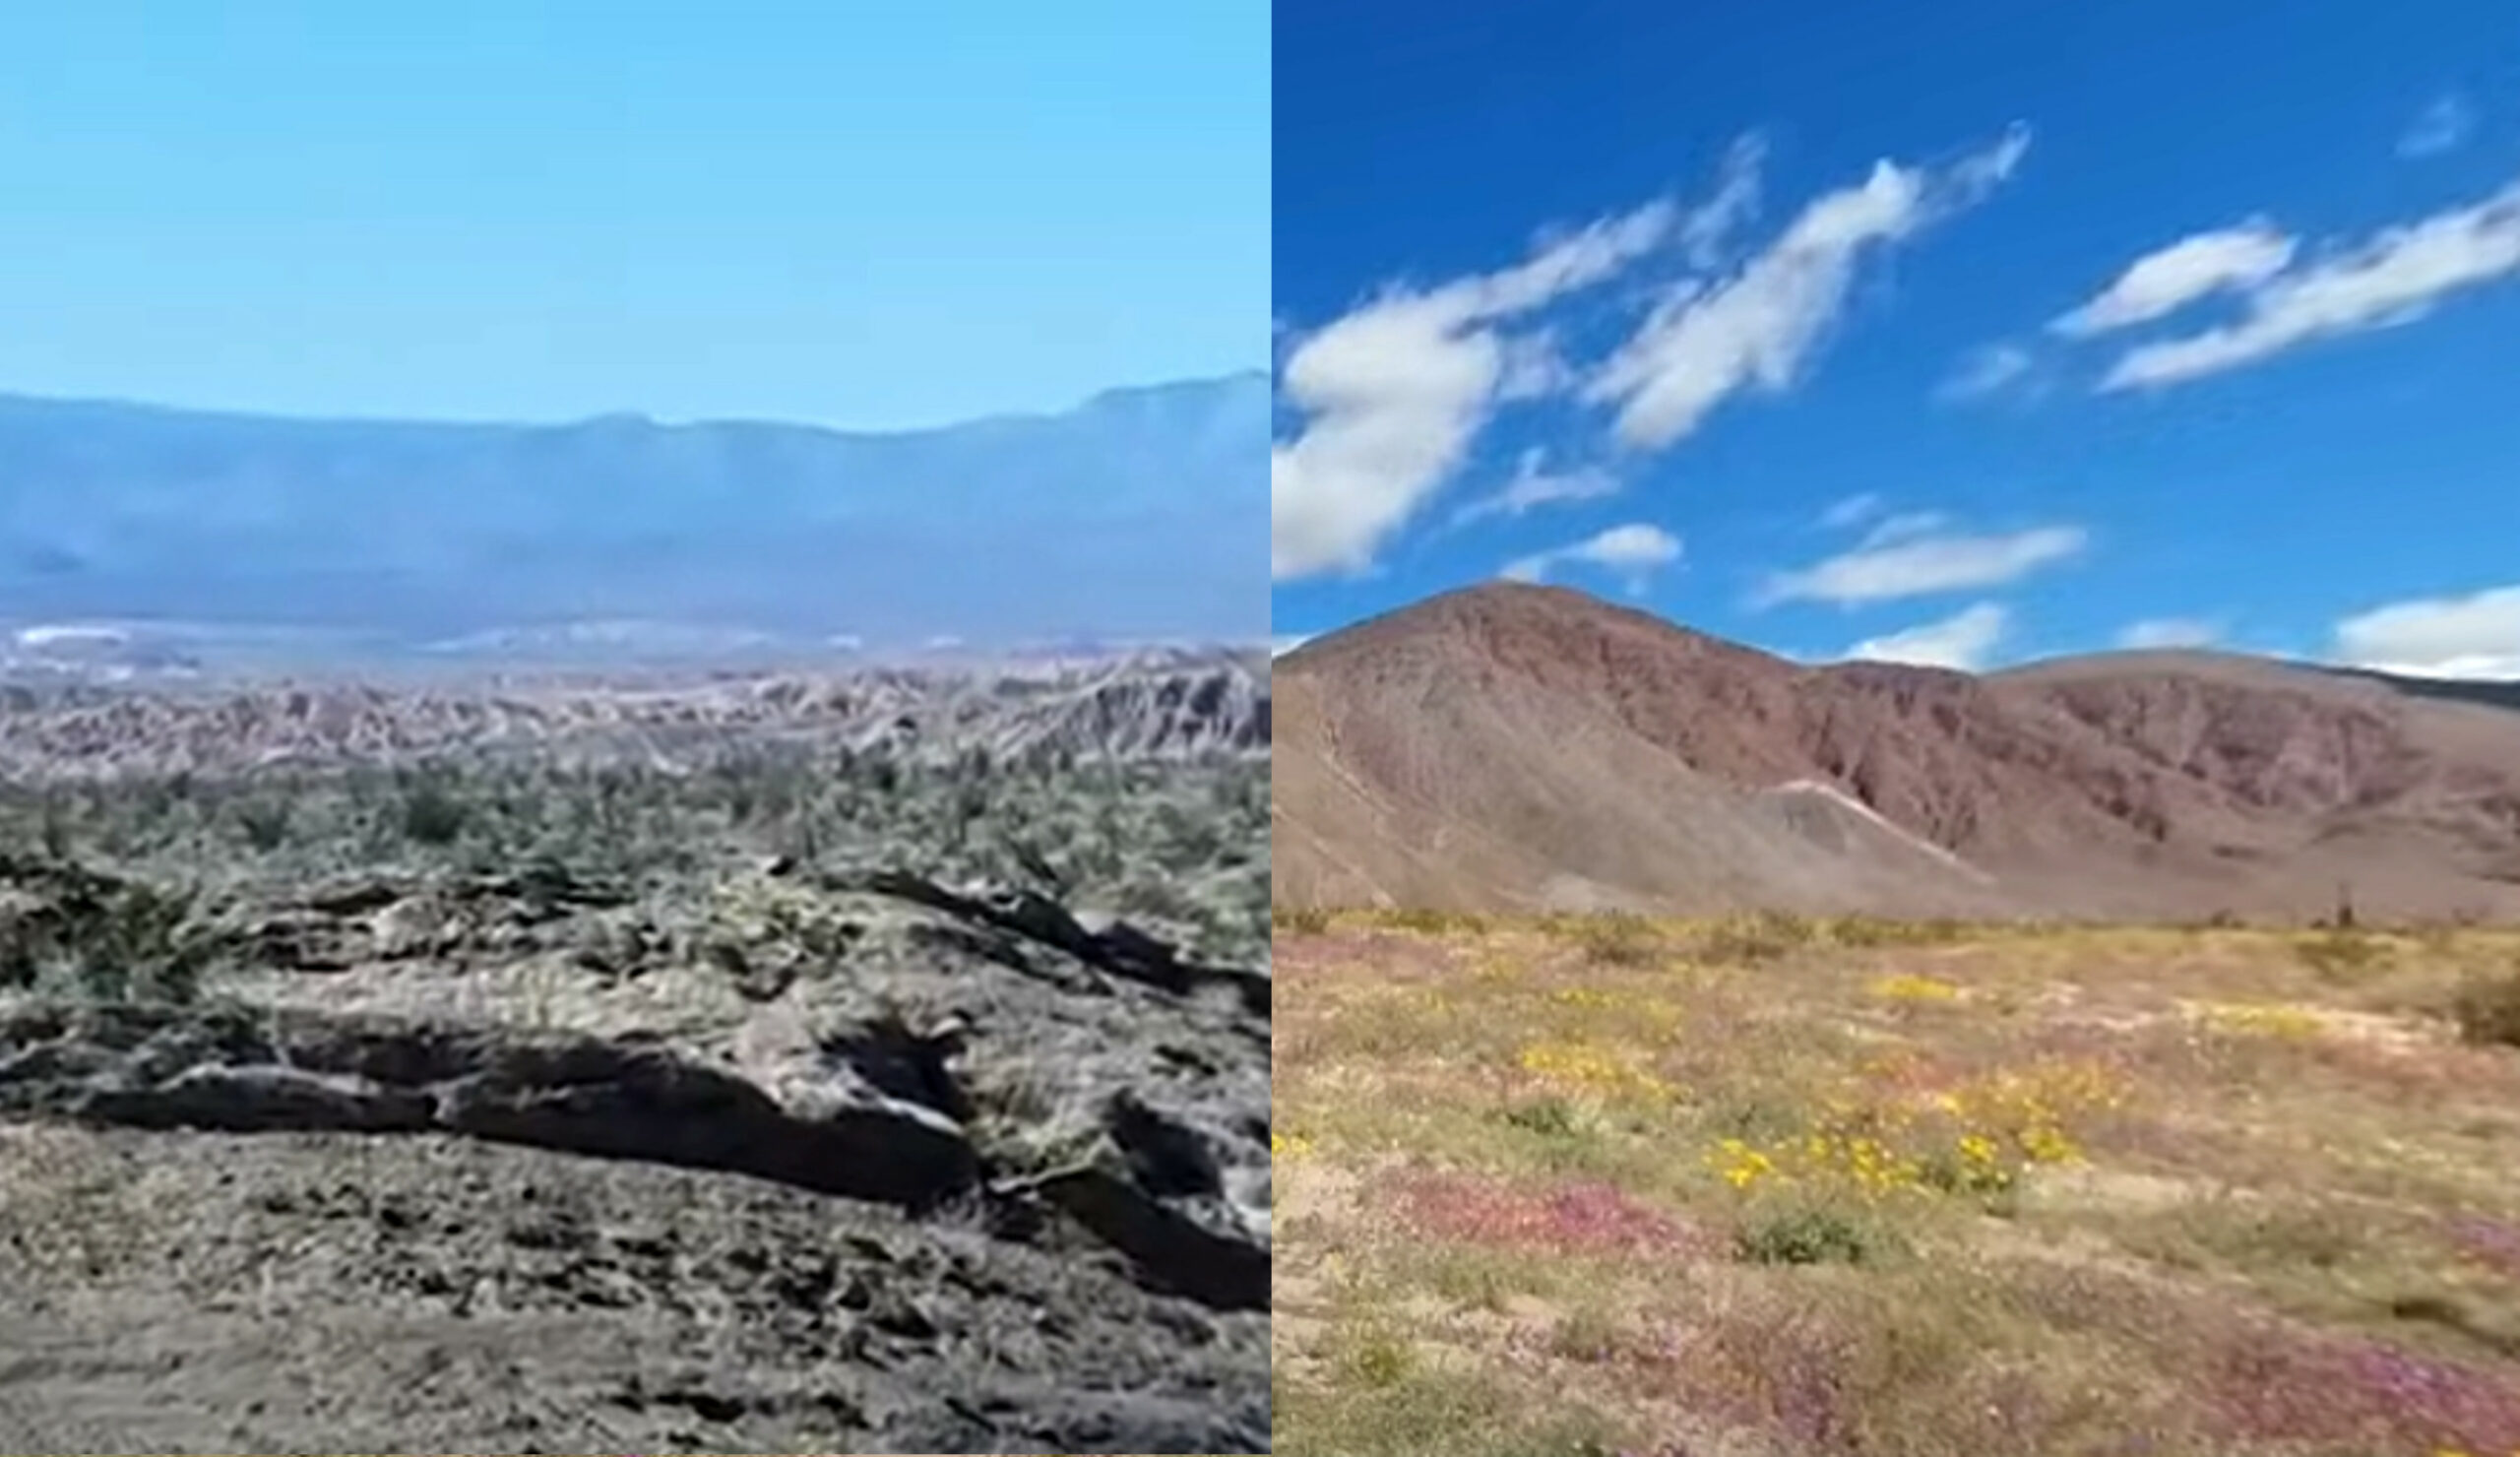 Anza Borrego Desert State Park prije i poslije supercvata 2019.